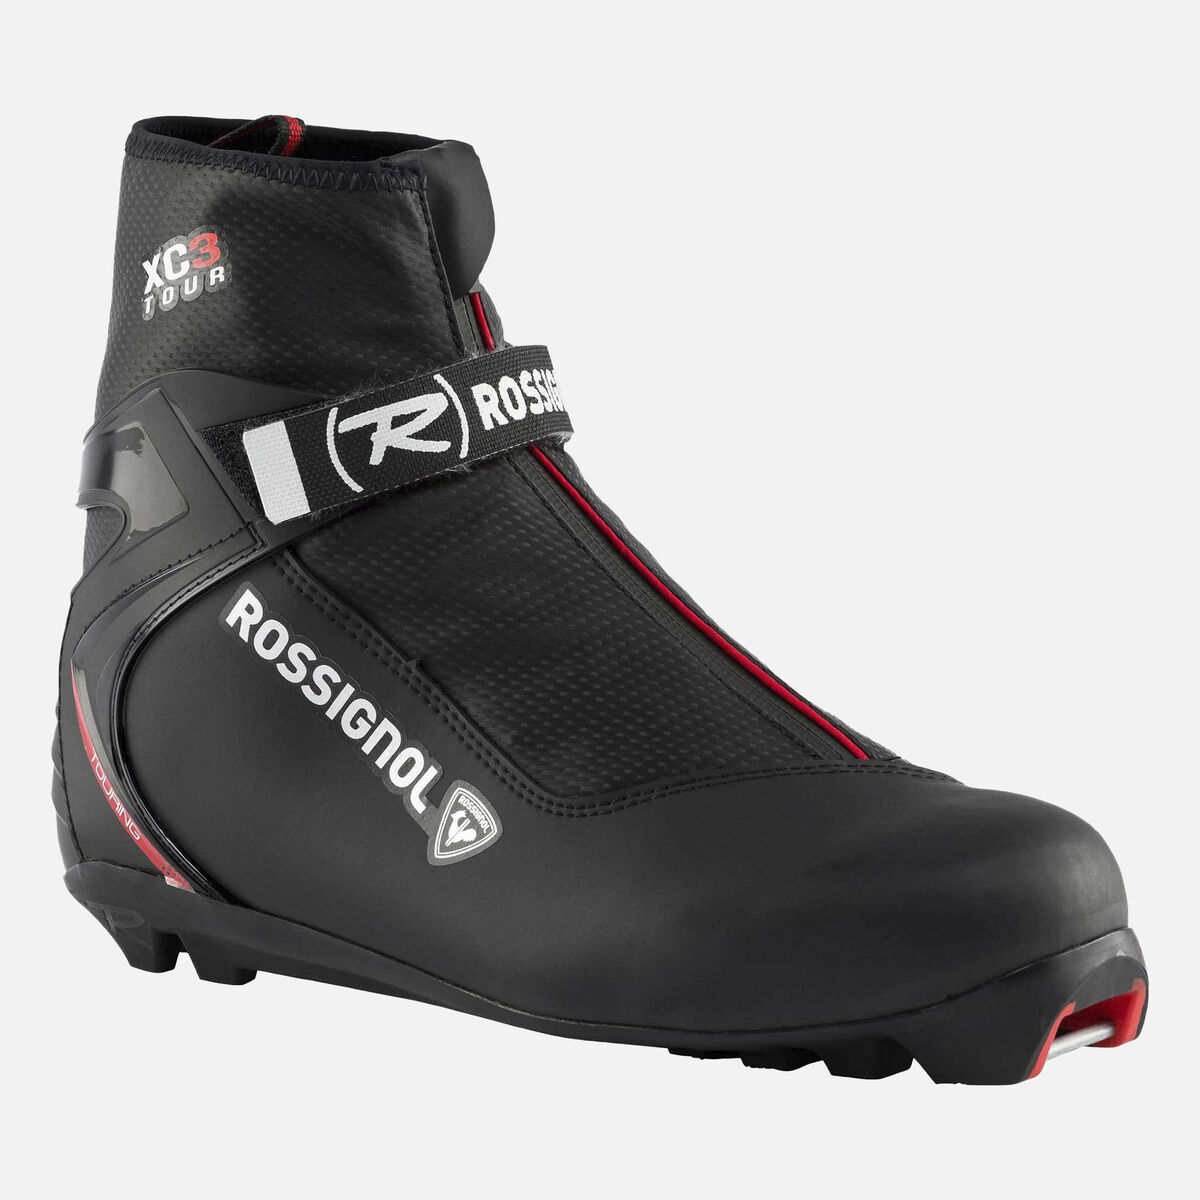 Rossignol Chaussures de ski nordique touring Unisexe XC-3 Multicolor